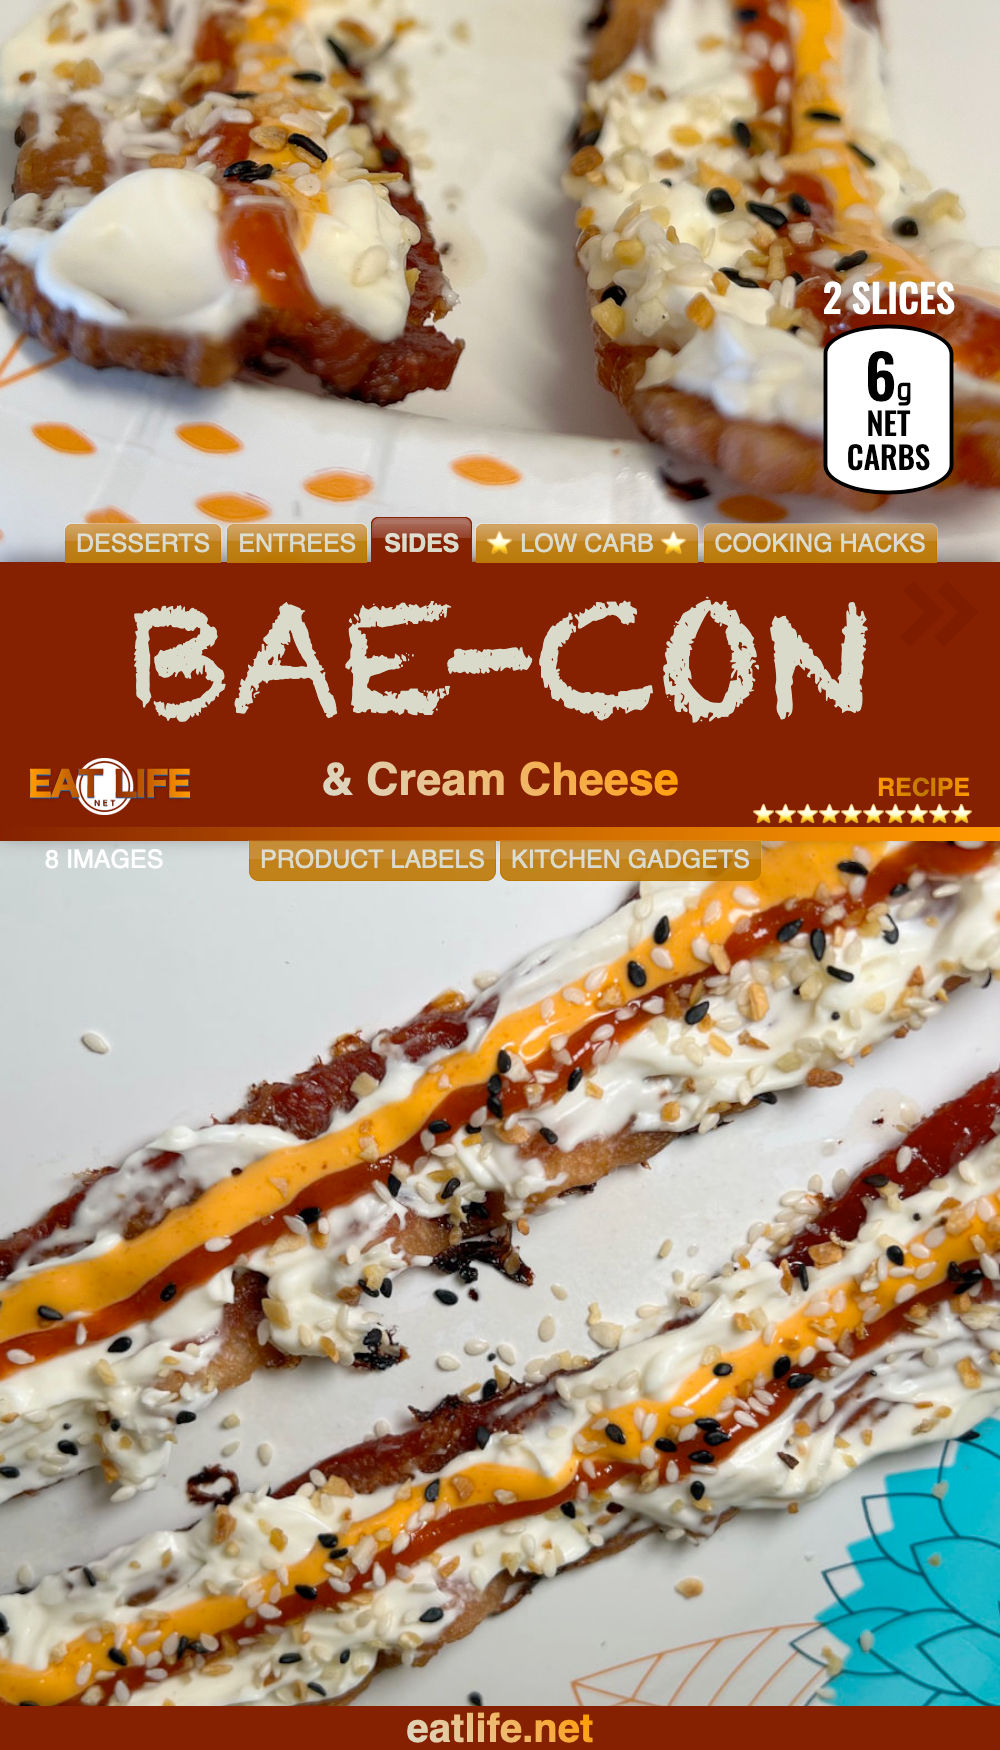 BAE-con and Cream Cheese